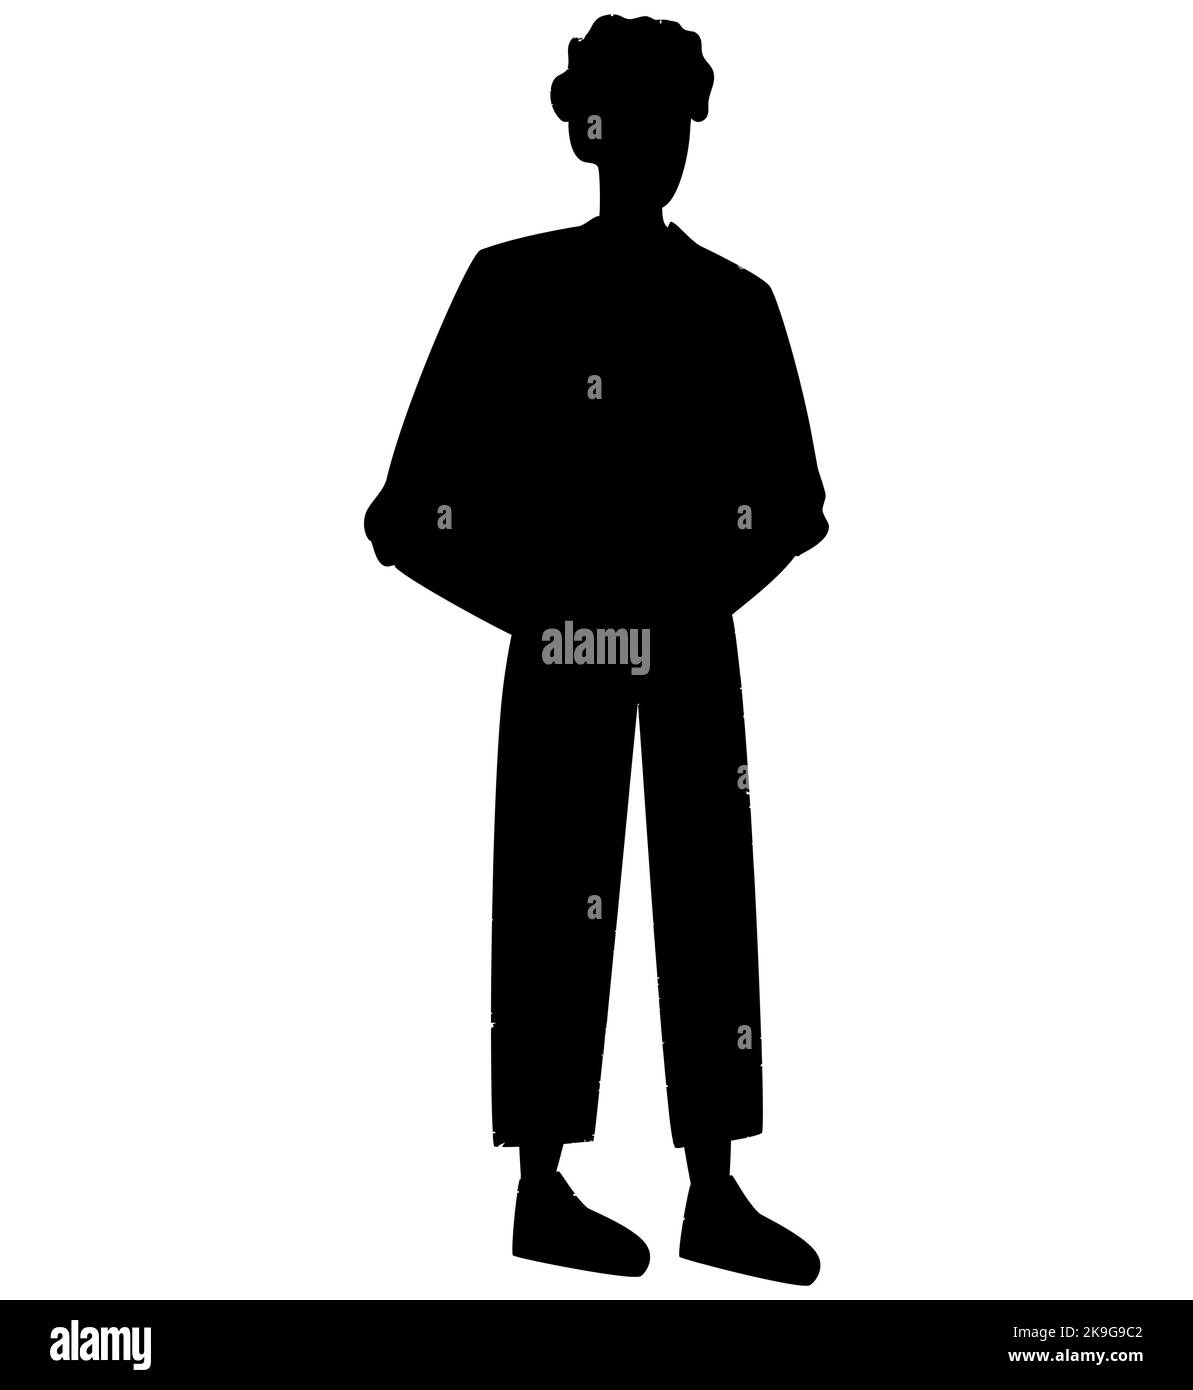 Silhouette vectorielle d'un homme debout, mains dans des poches hommes d'affaires, couleur noire, isolé sur fond blanc Illustration de Vecteur